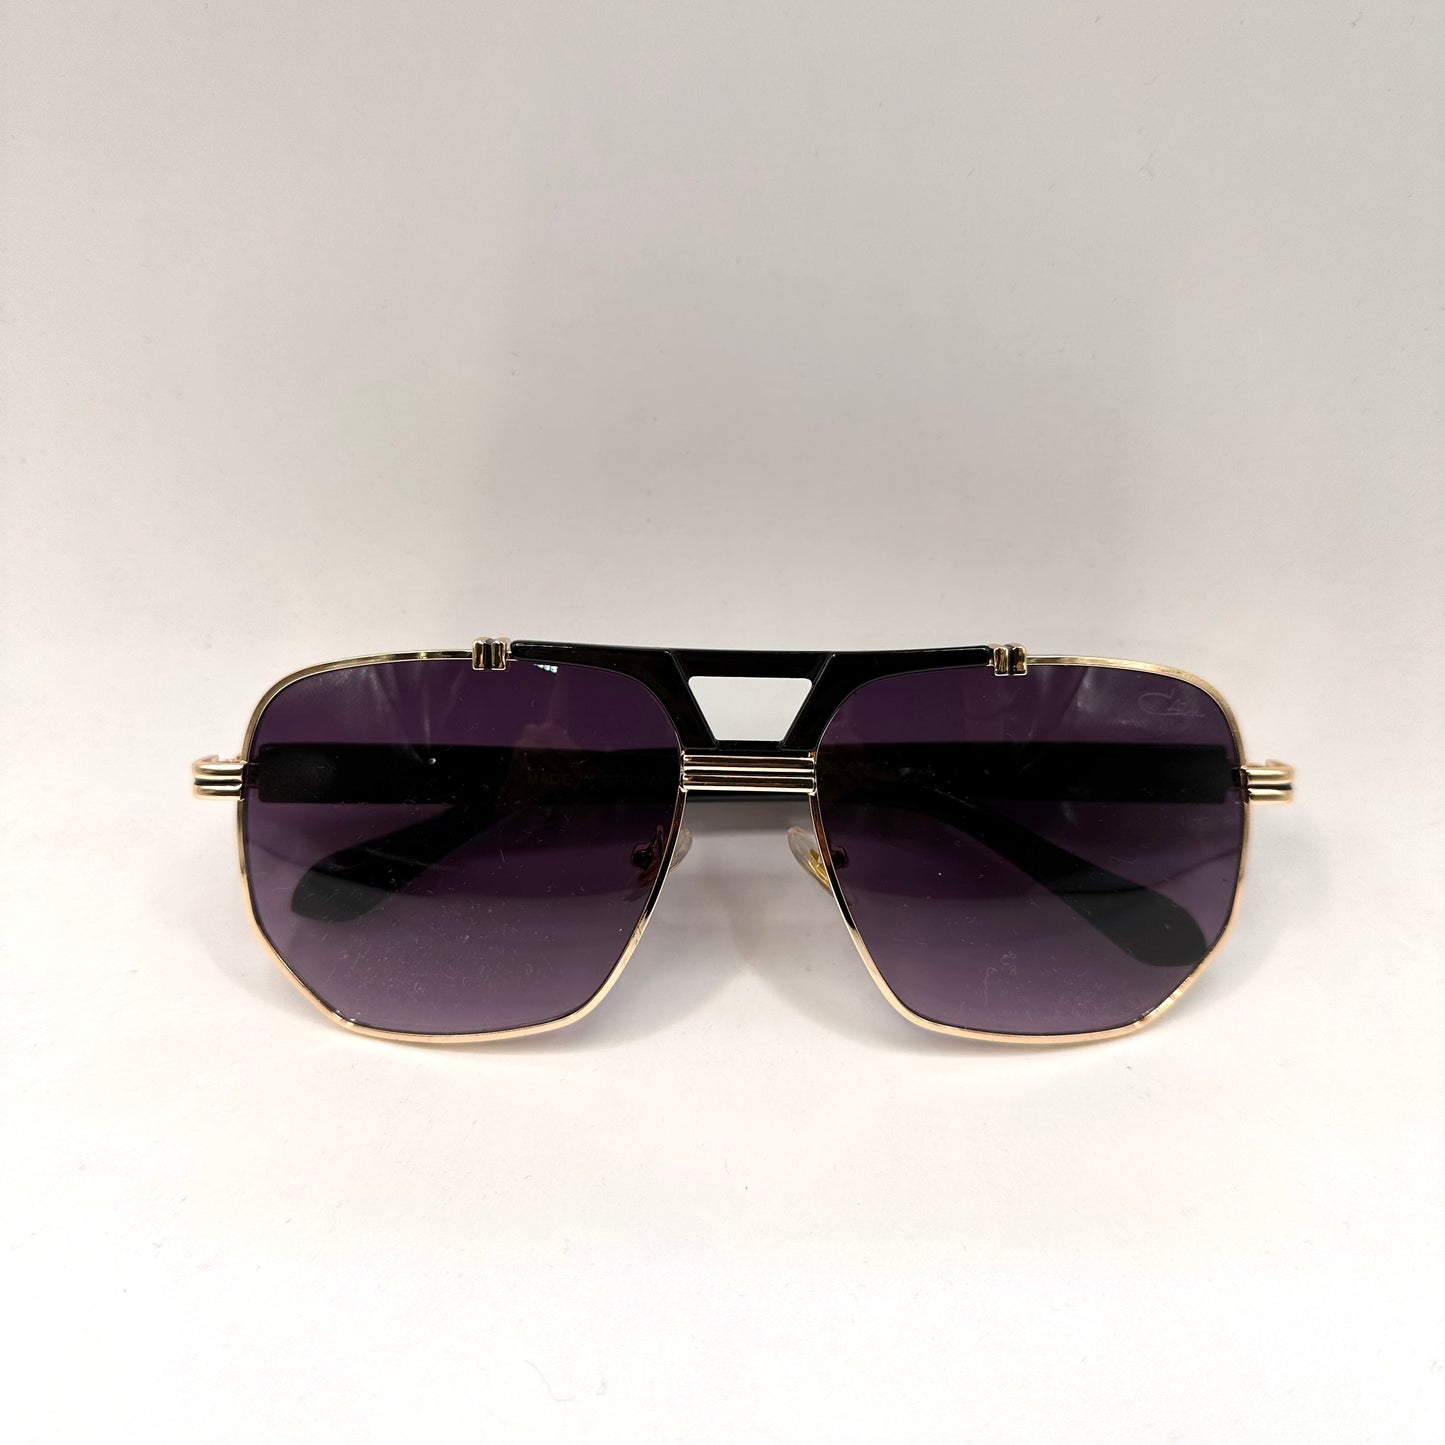 Culebra Sunglasses